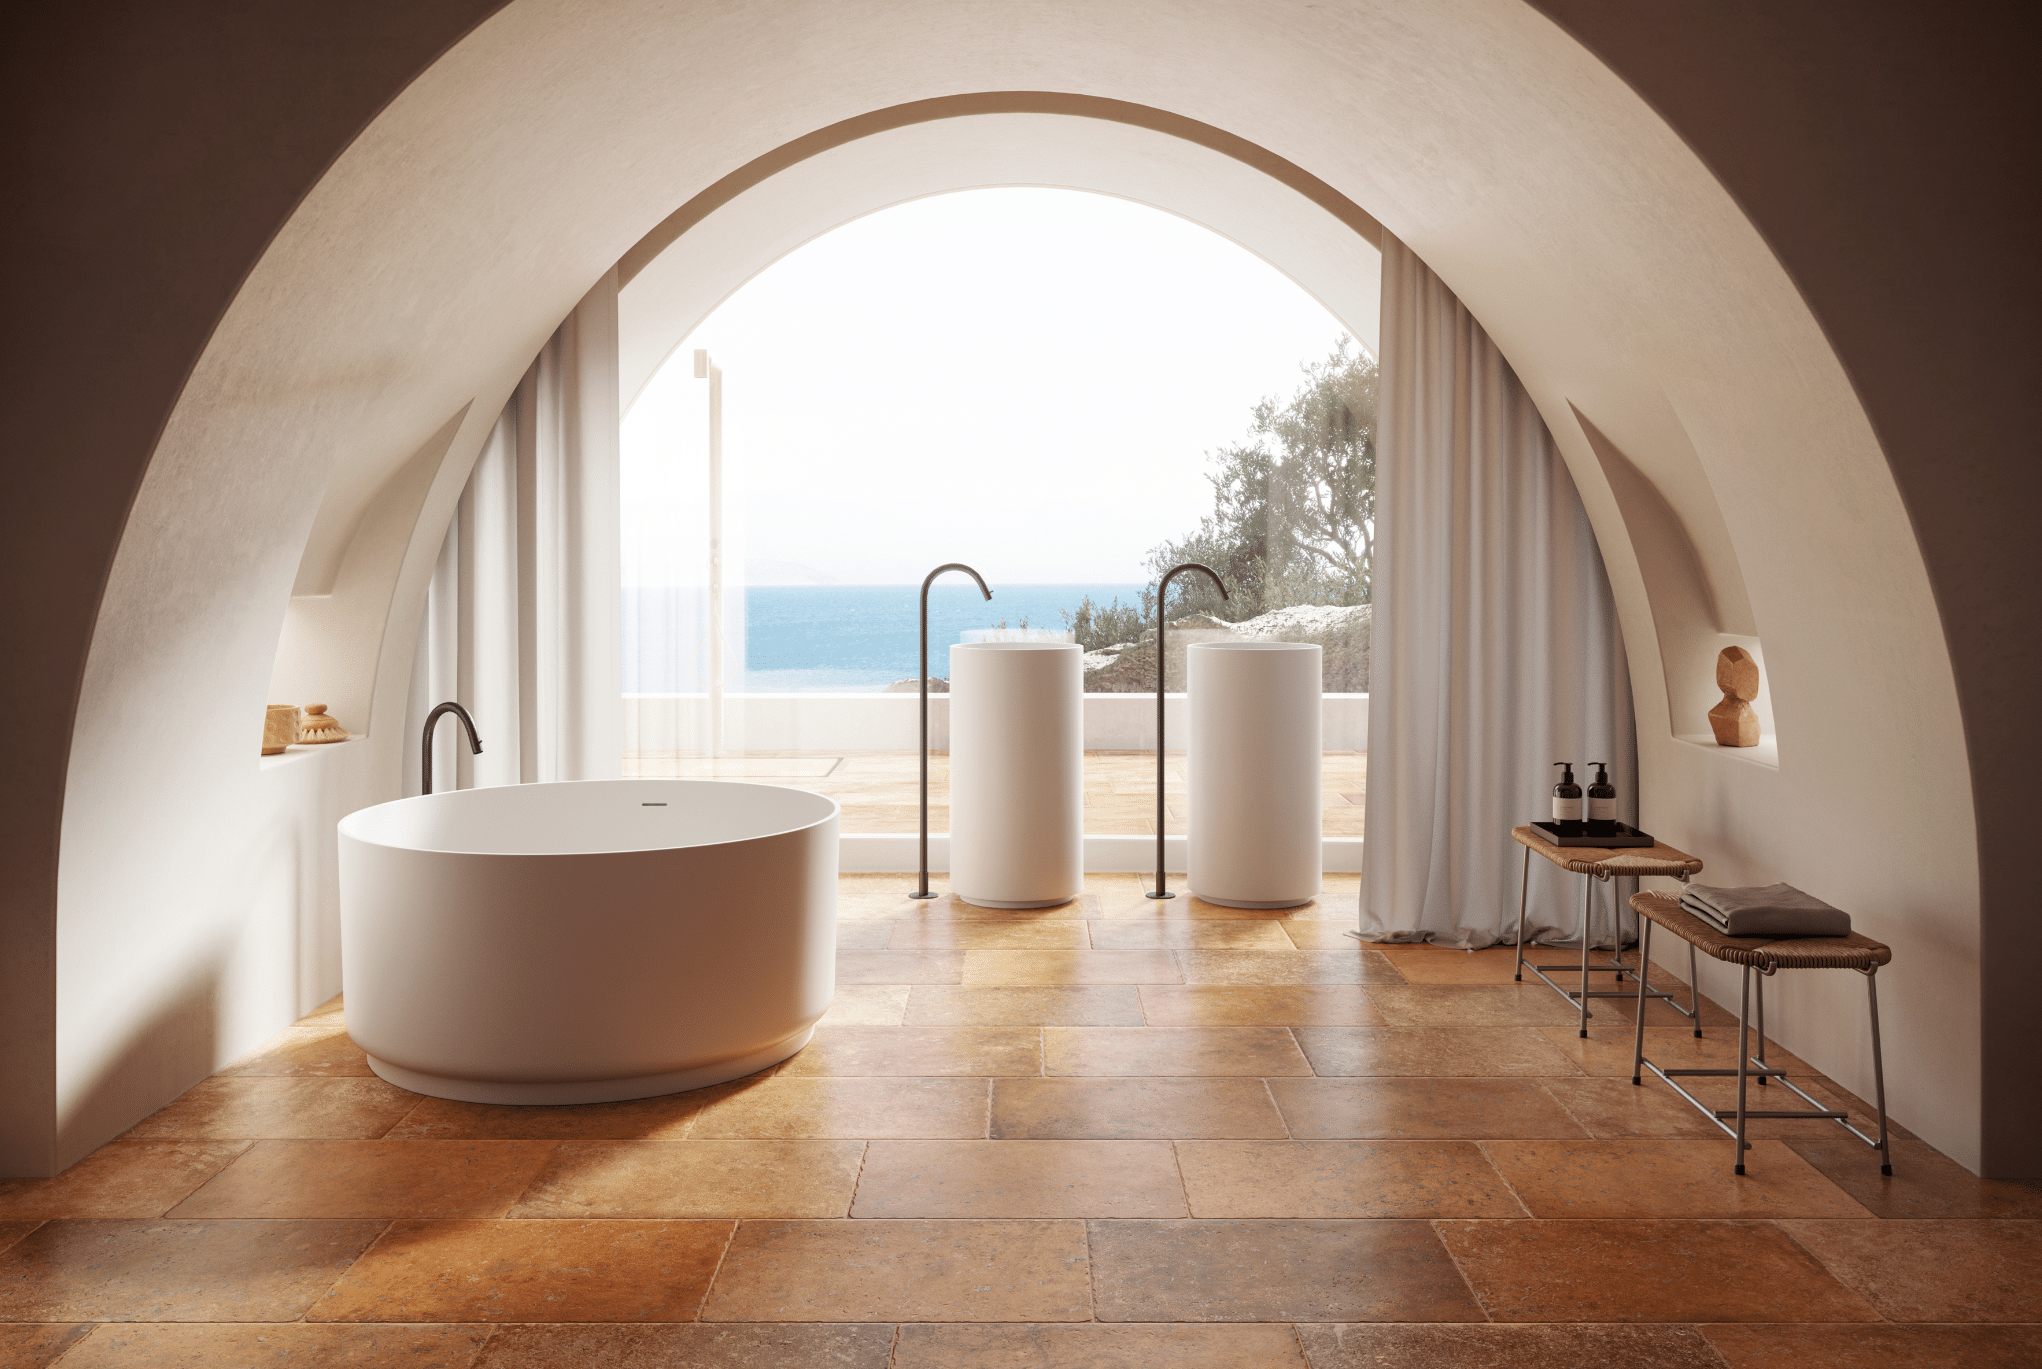 Fliesendorf zeigt ein Badezimmer im mediterranen Stil und Fliesenboden in Terrakotta, einer freistehenden Badewanne und zwei Waschtischen vor einem großen Fenster mit Aussicht aufs Meer.